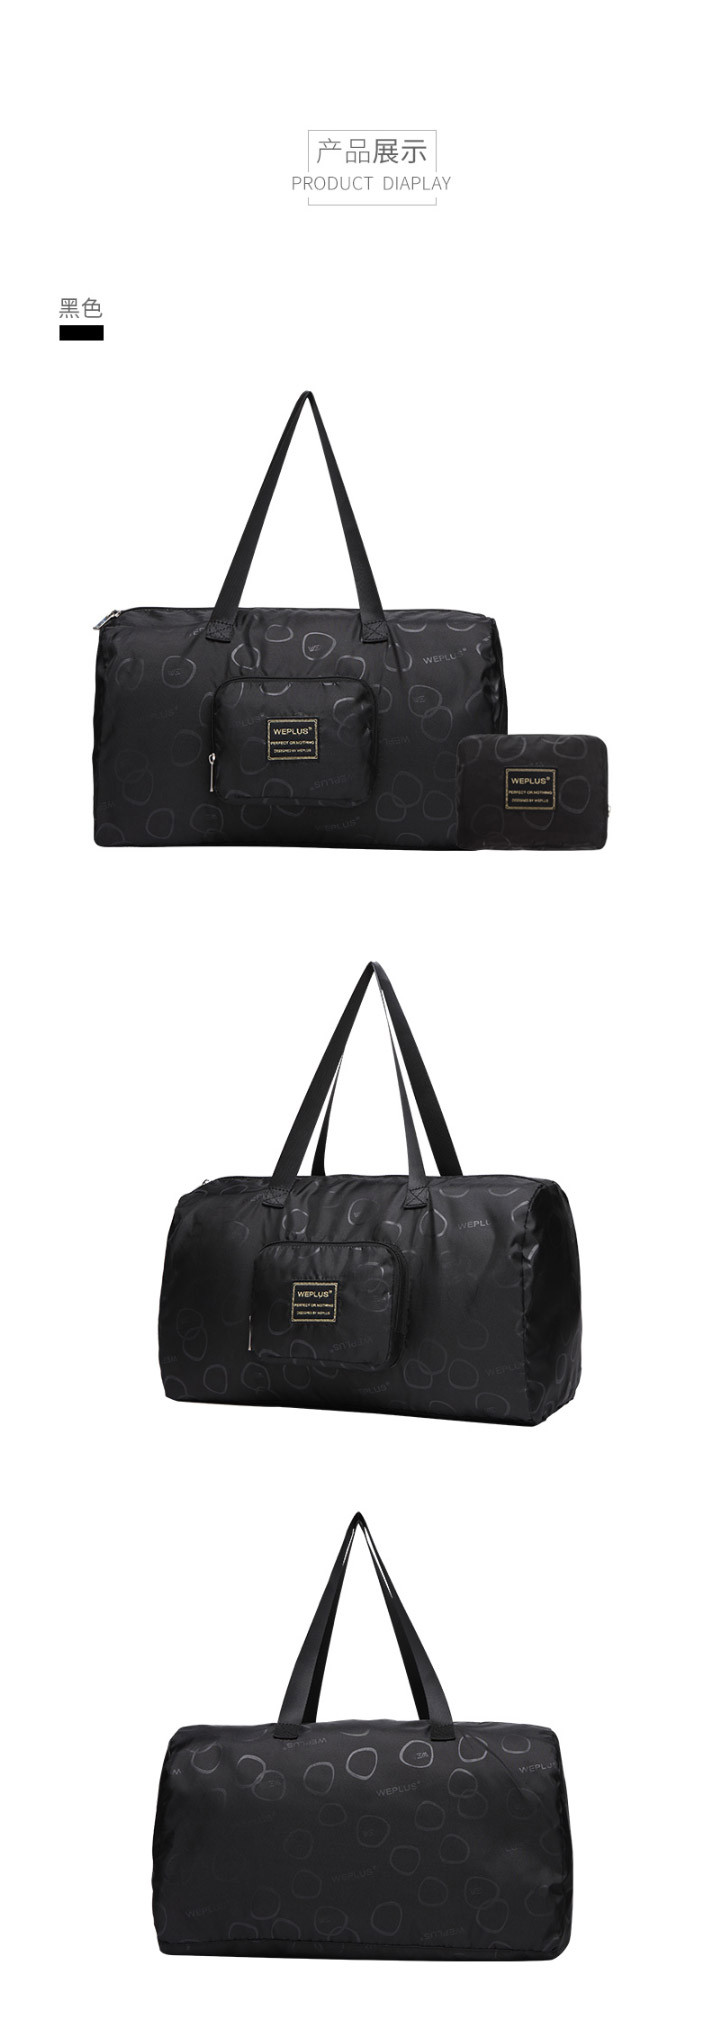 WEPLUS唯加时尚休闲折叠旅行袋行李托运袋收纳袋WP7309 黑色